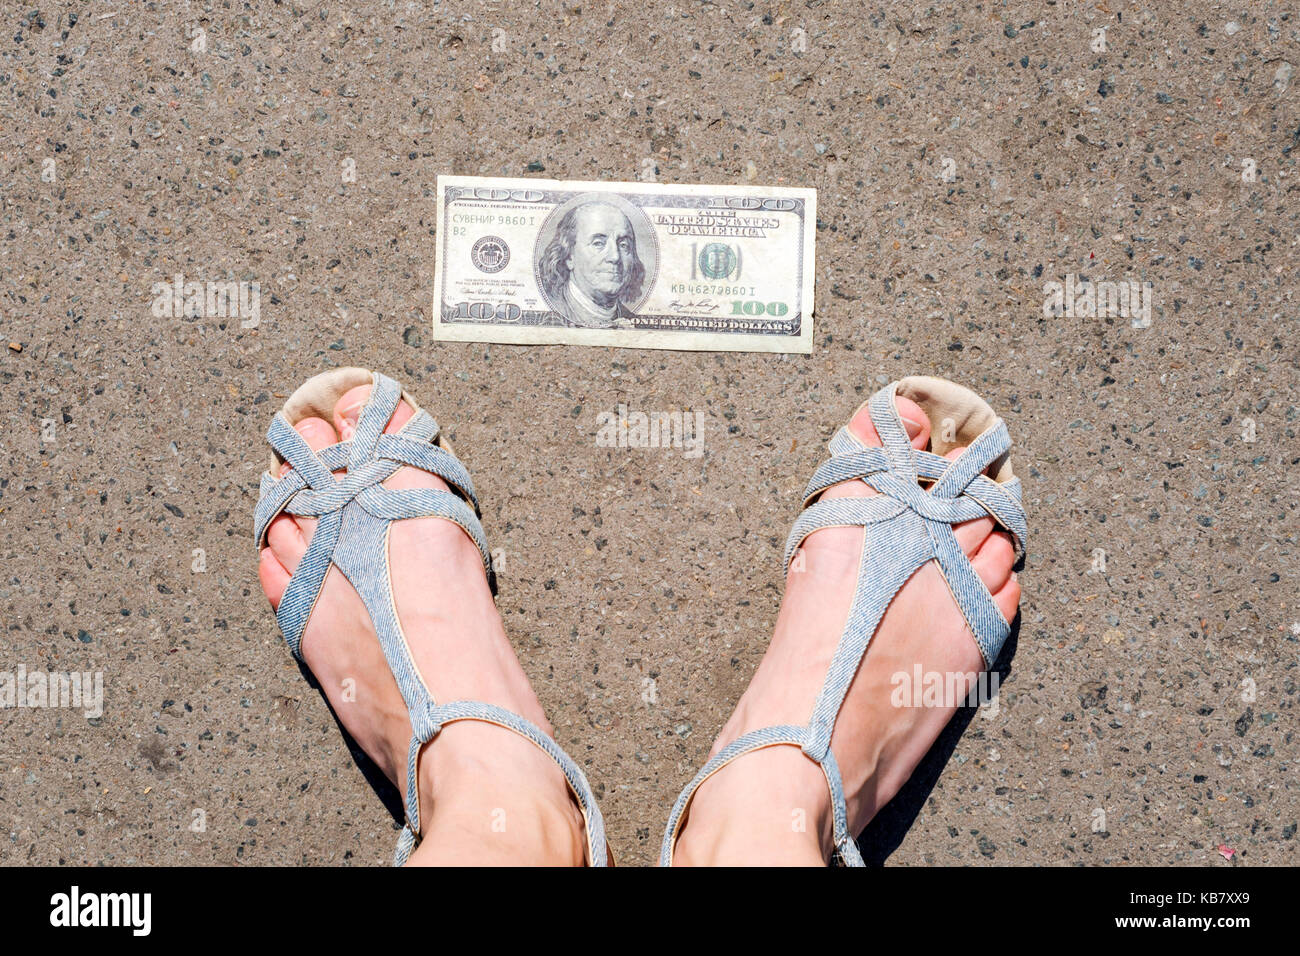 Lucky donna trovare i soldi per strada. donne piedi accanto a centinaia di dollari. Denaro smarrito e ritrovato sdraiato sulla strada asfaltata. Foto Stock